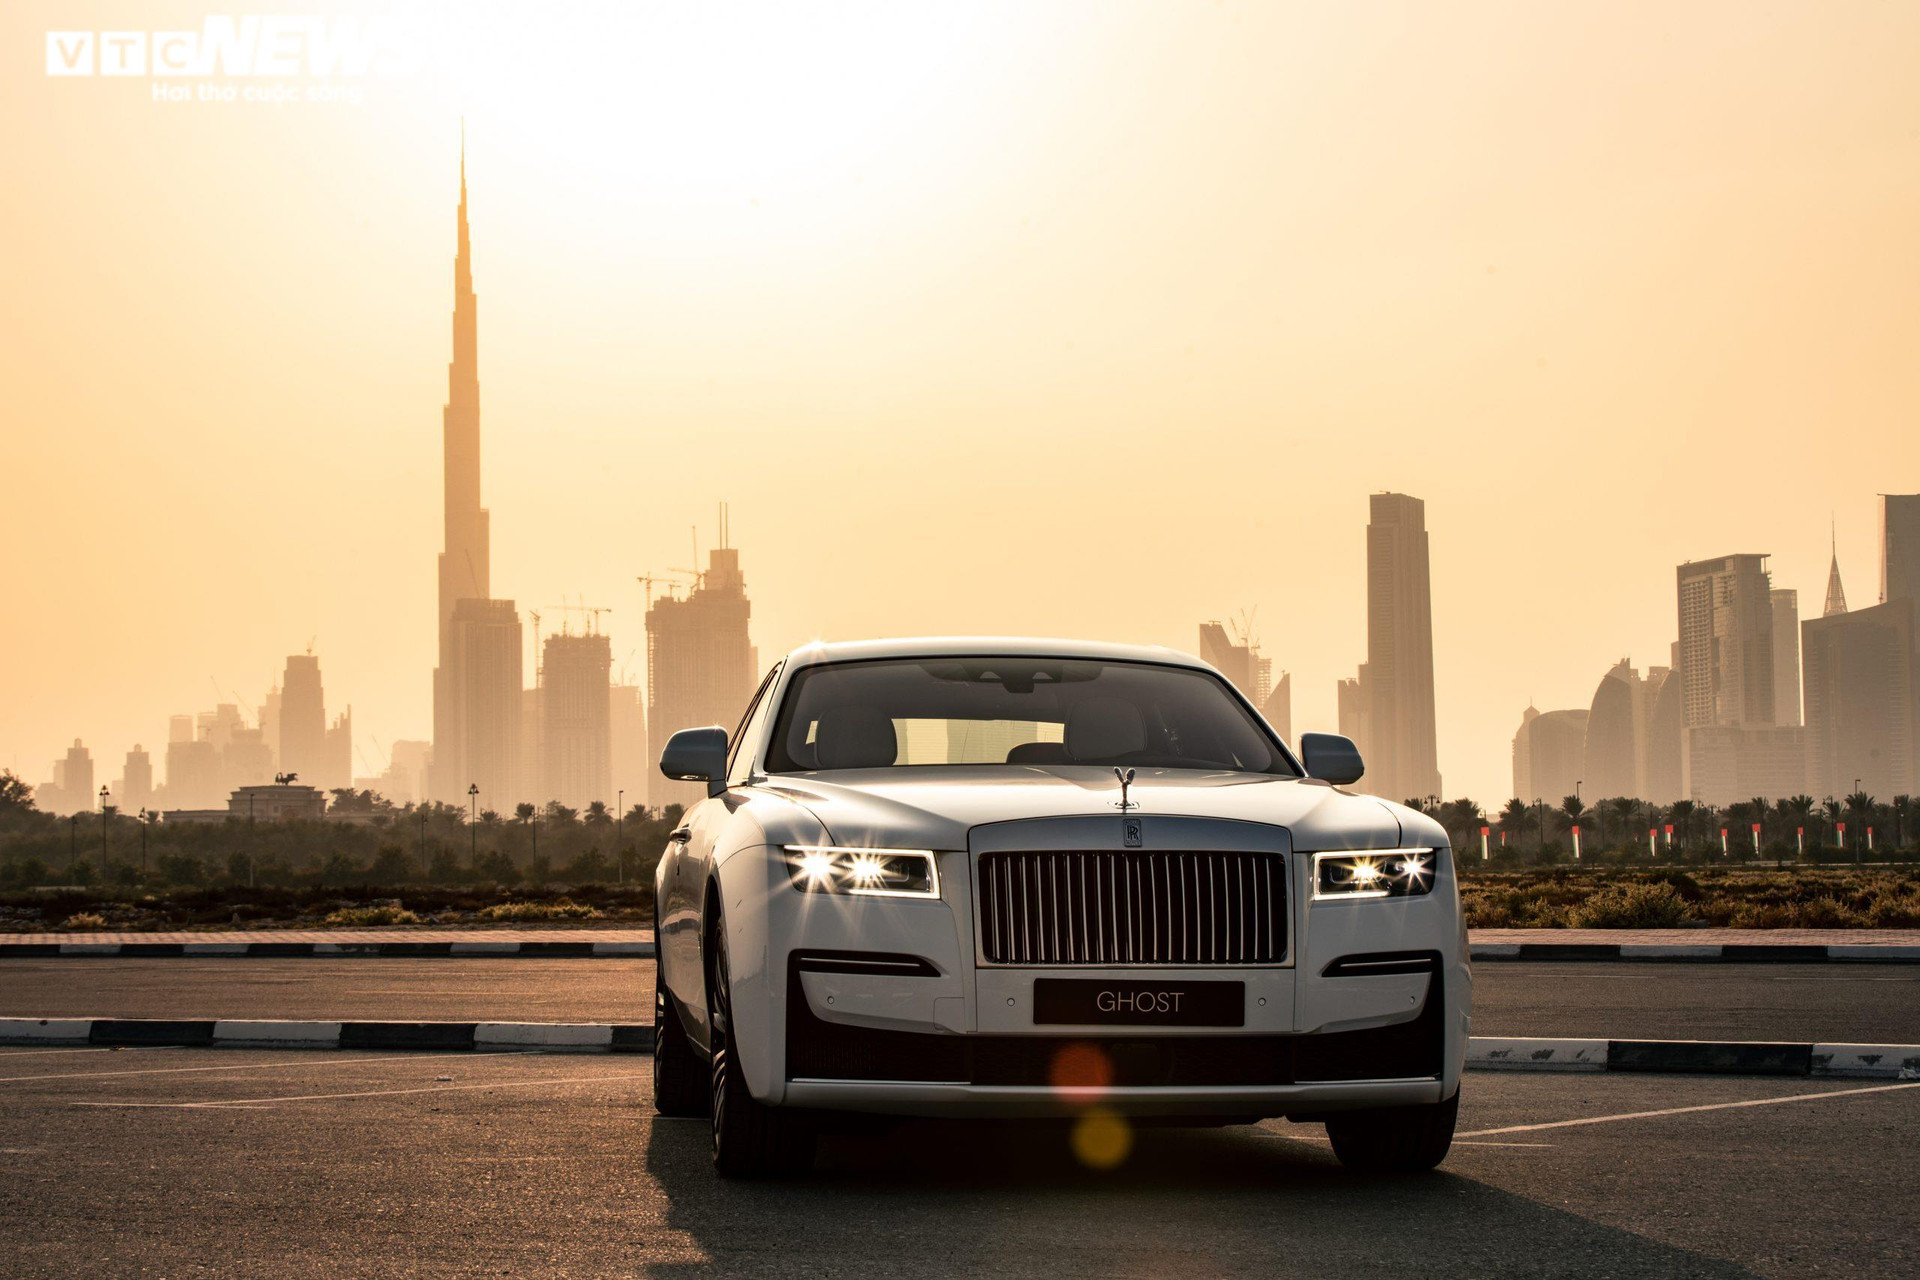 Siêu xe Rolls-Royce New Ghost và bộ ảnh chu du khắp thế giới - 11